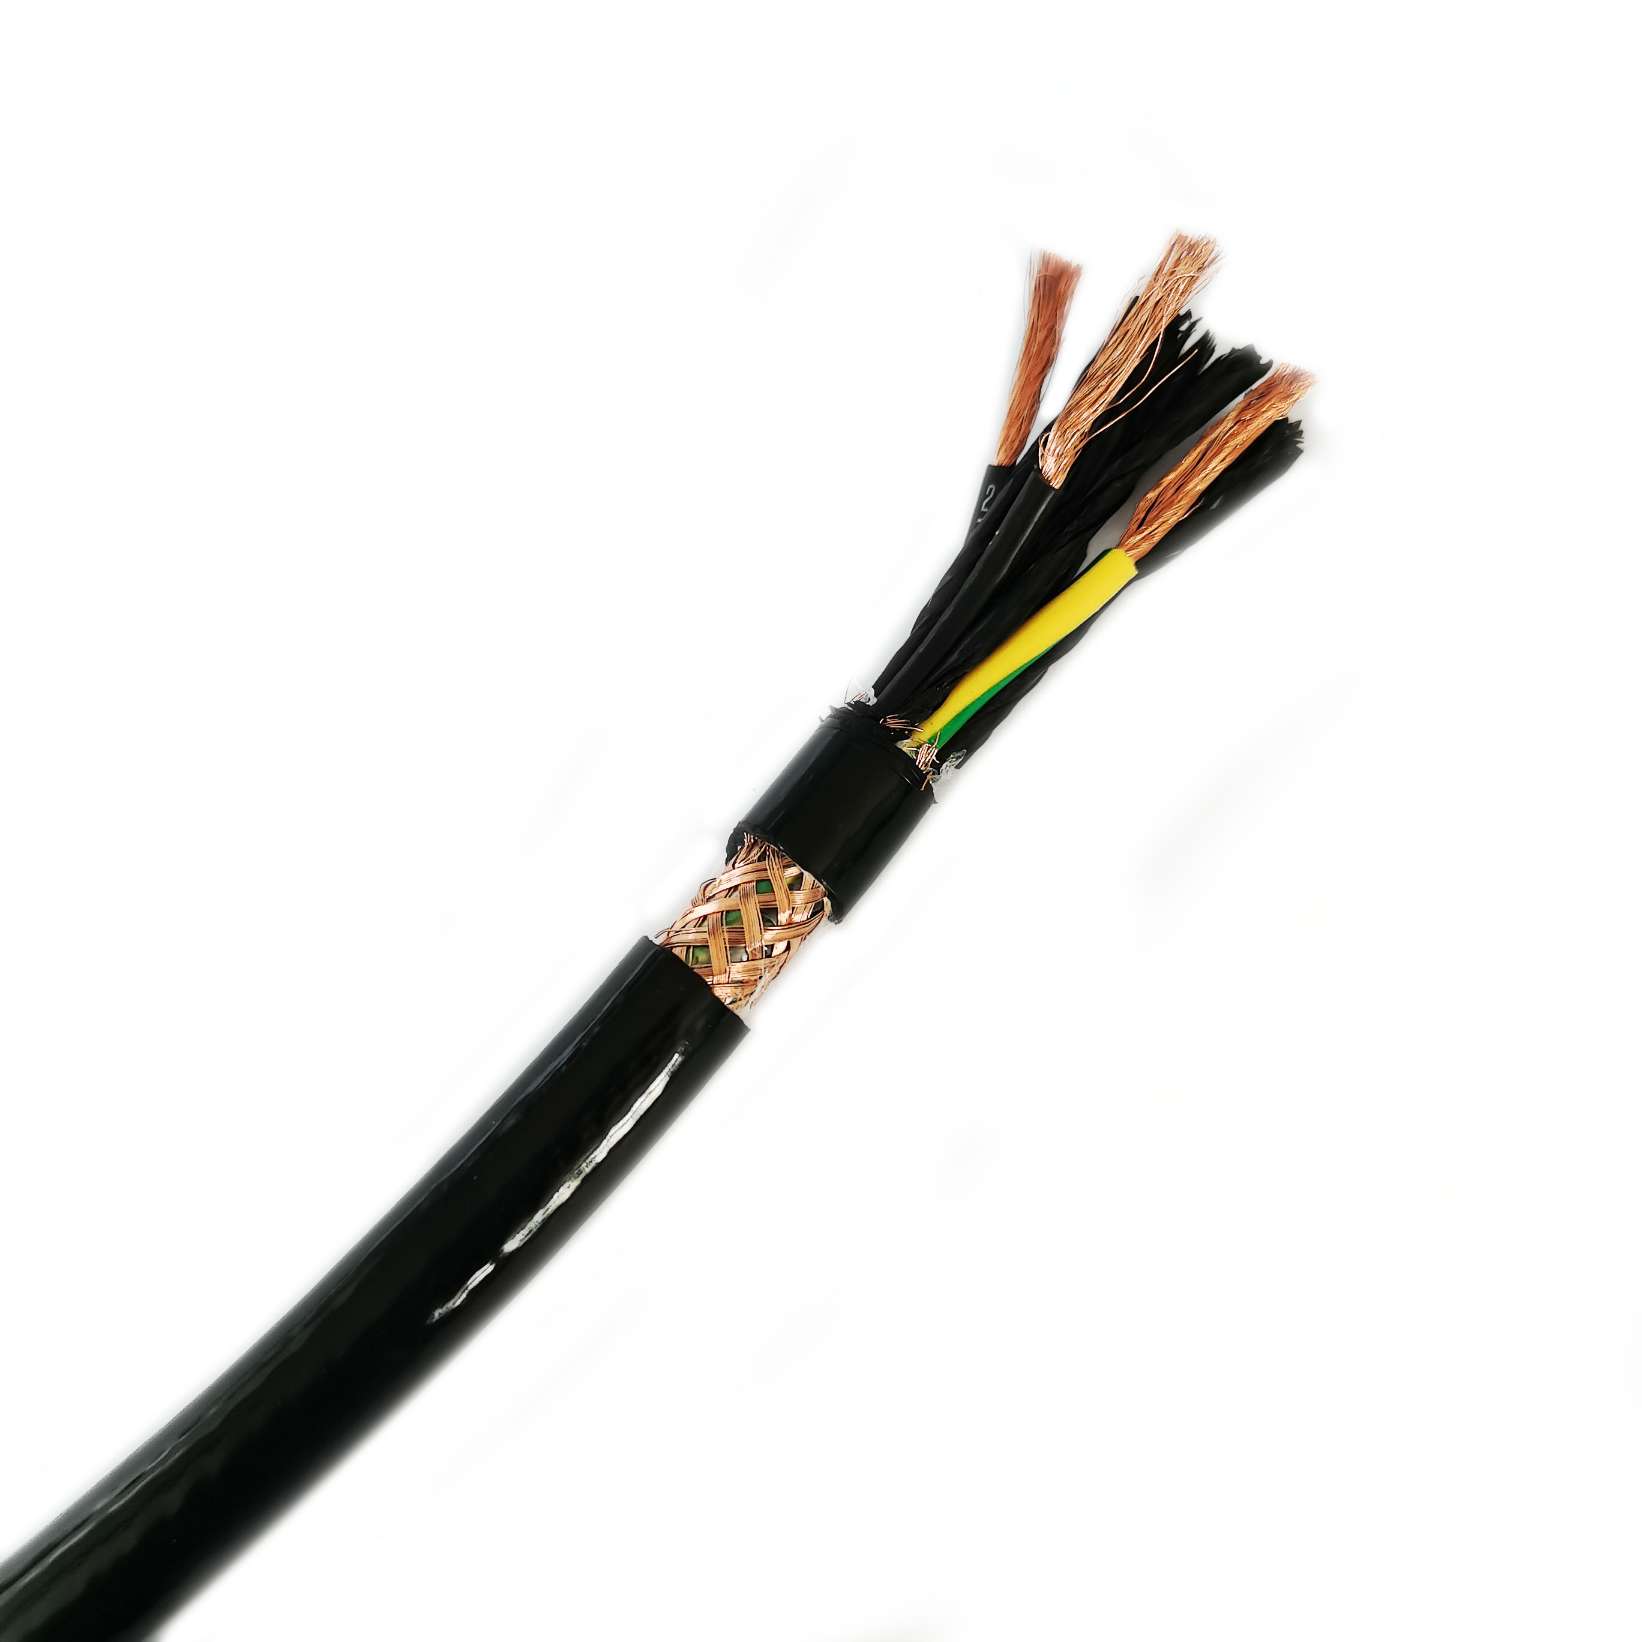 Quels sont les avantages des câbles PUR par rapport aux autres types de câbles ?